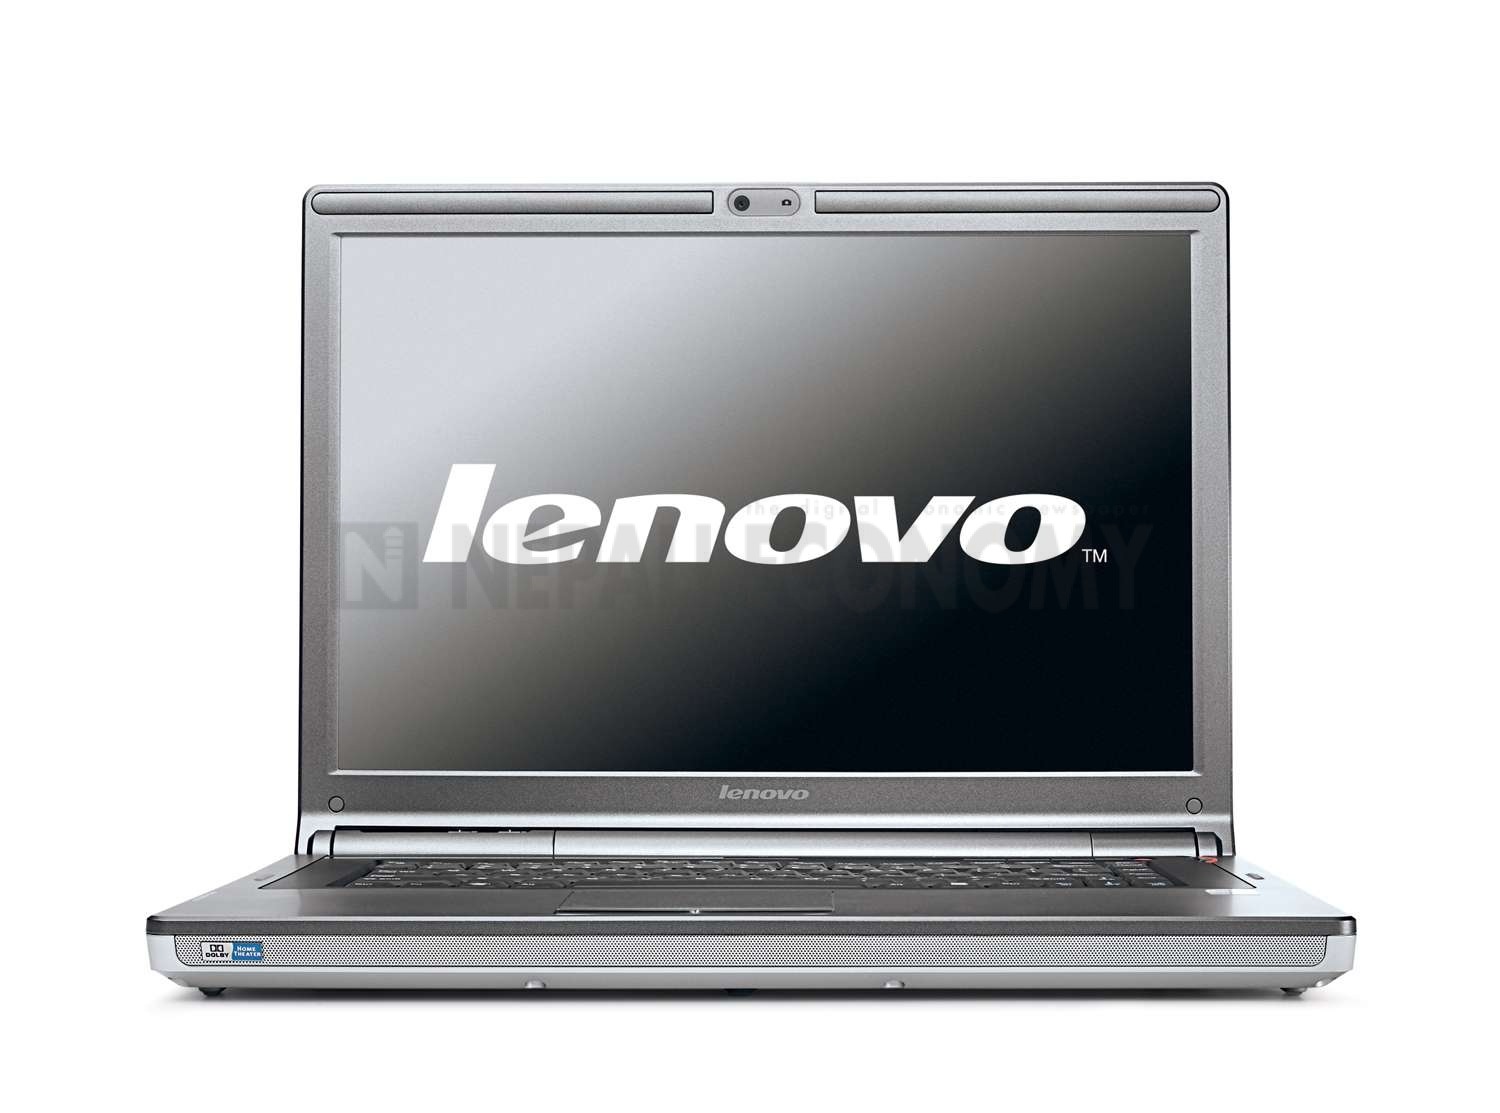 Lenovo to buy IBM x86 server business for $2.3 billion